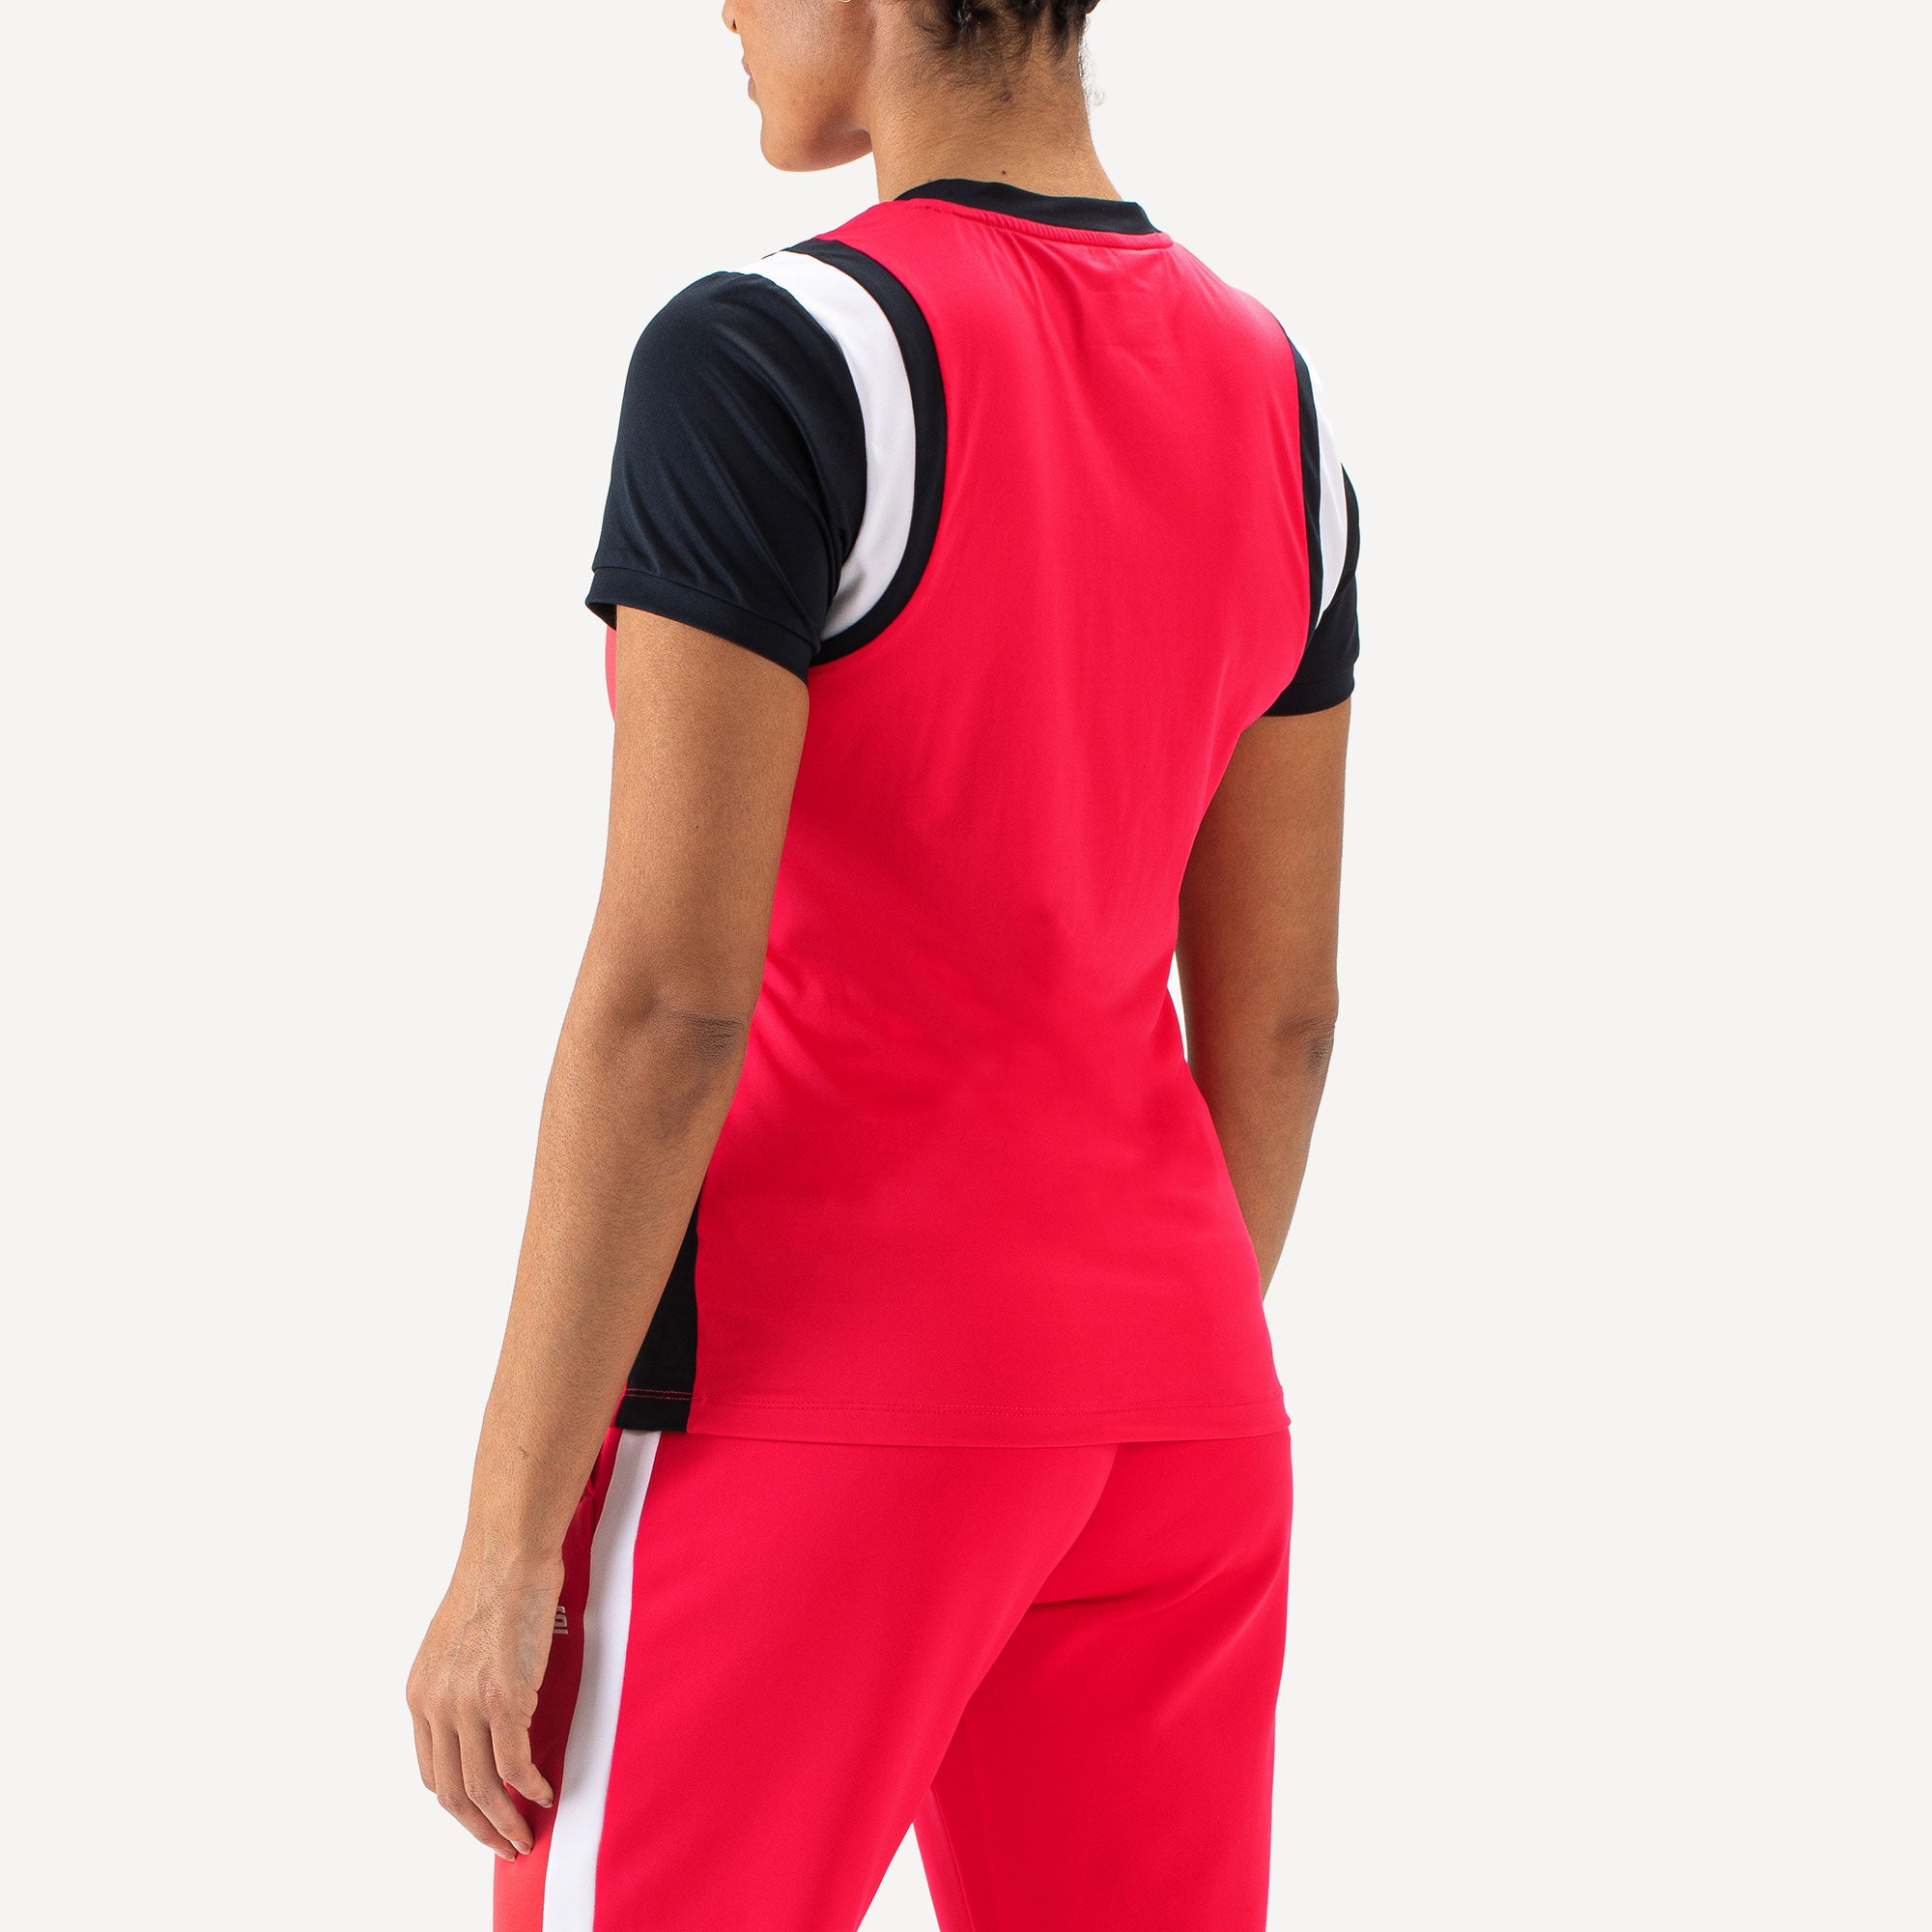 Sjeng Sports Inana Women's Tennis Shirt - Red (2)